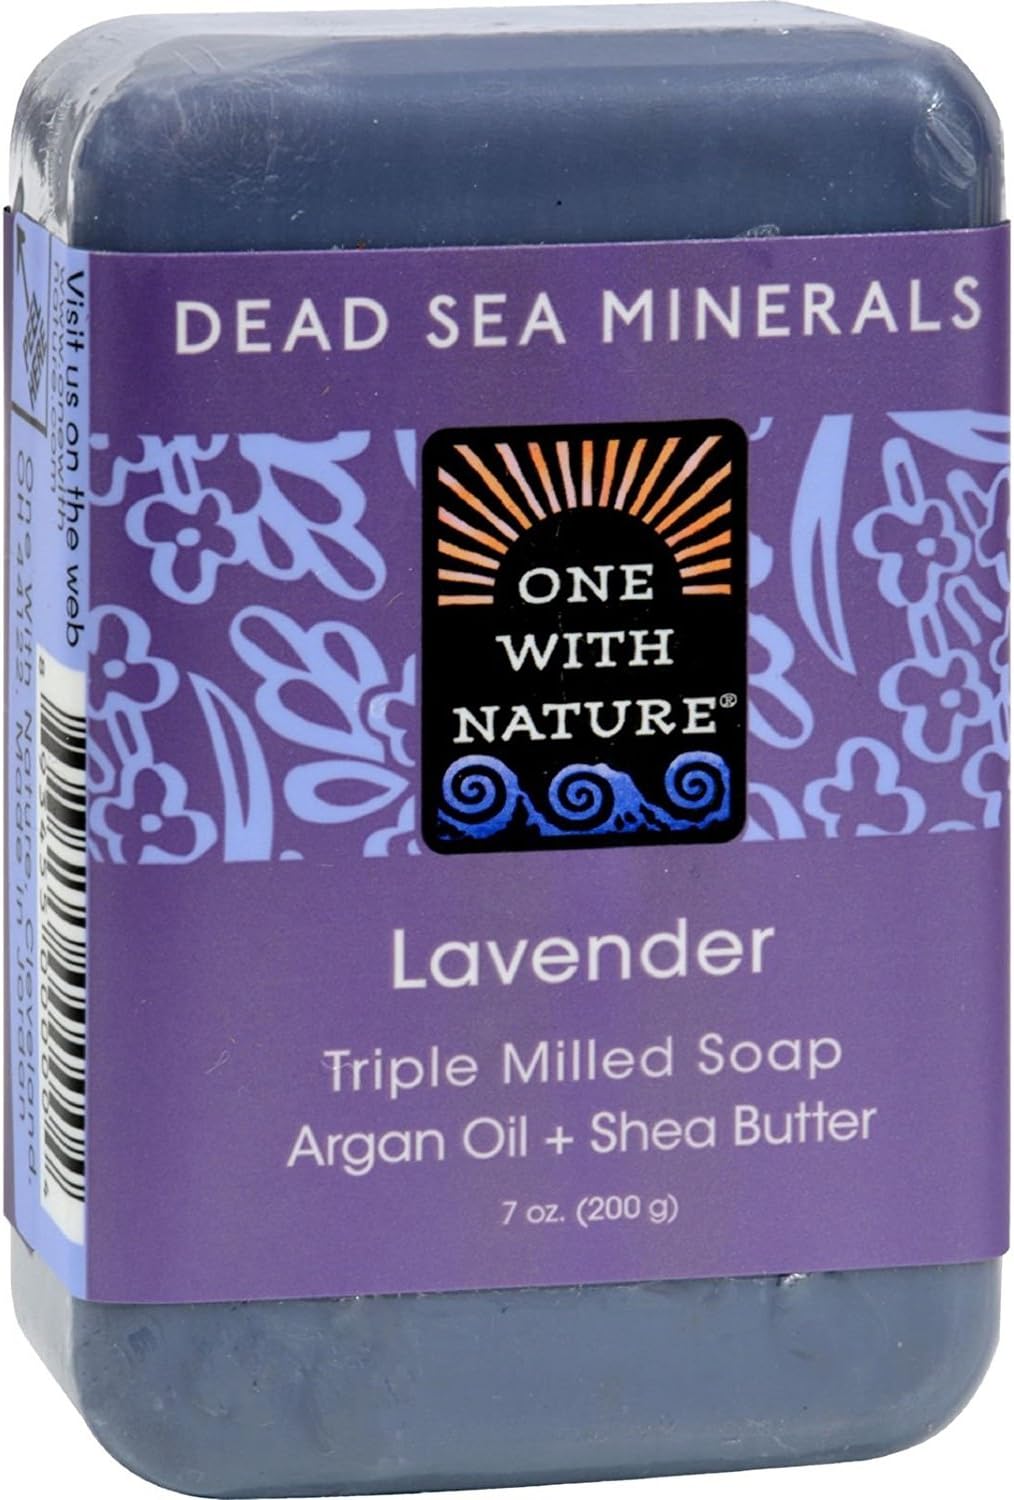 Esupli.com  One with Nature Dead Sea Mineral Soap, Lavender 